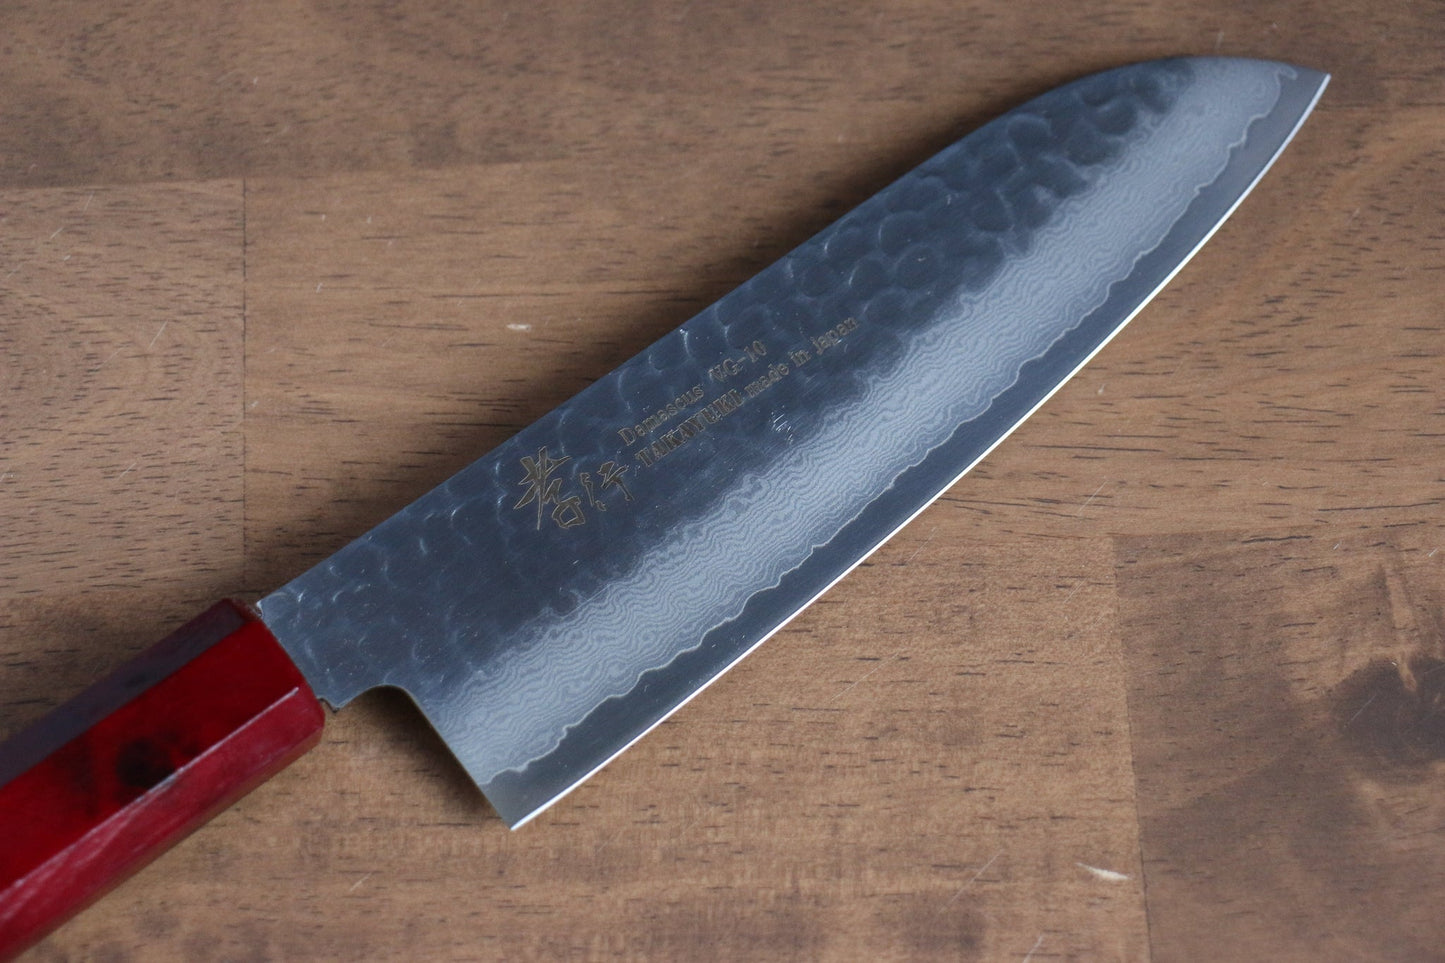 Marke Sakai Takayuki Sieben Farben VG10 33 Schichten Santoku-Mehrzweckmesser Japanisches Messer 180 mm Griff aus ABS-Kunststoff (alte Schildkrötenpanzerfarbe)